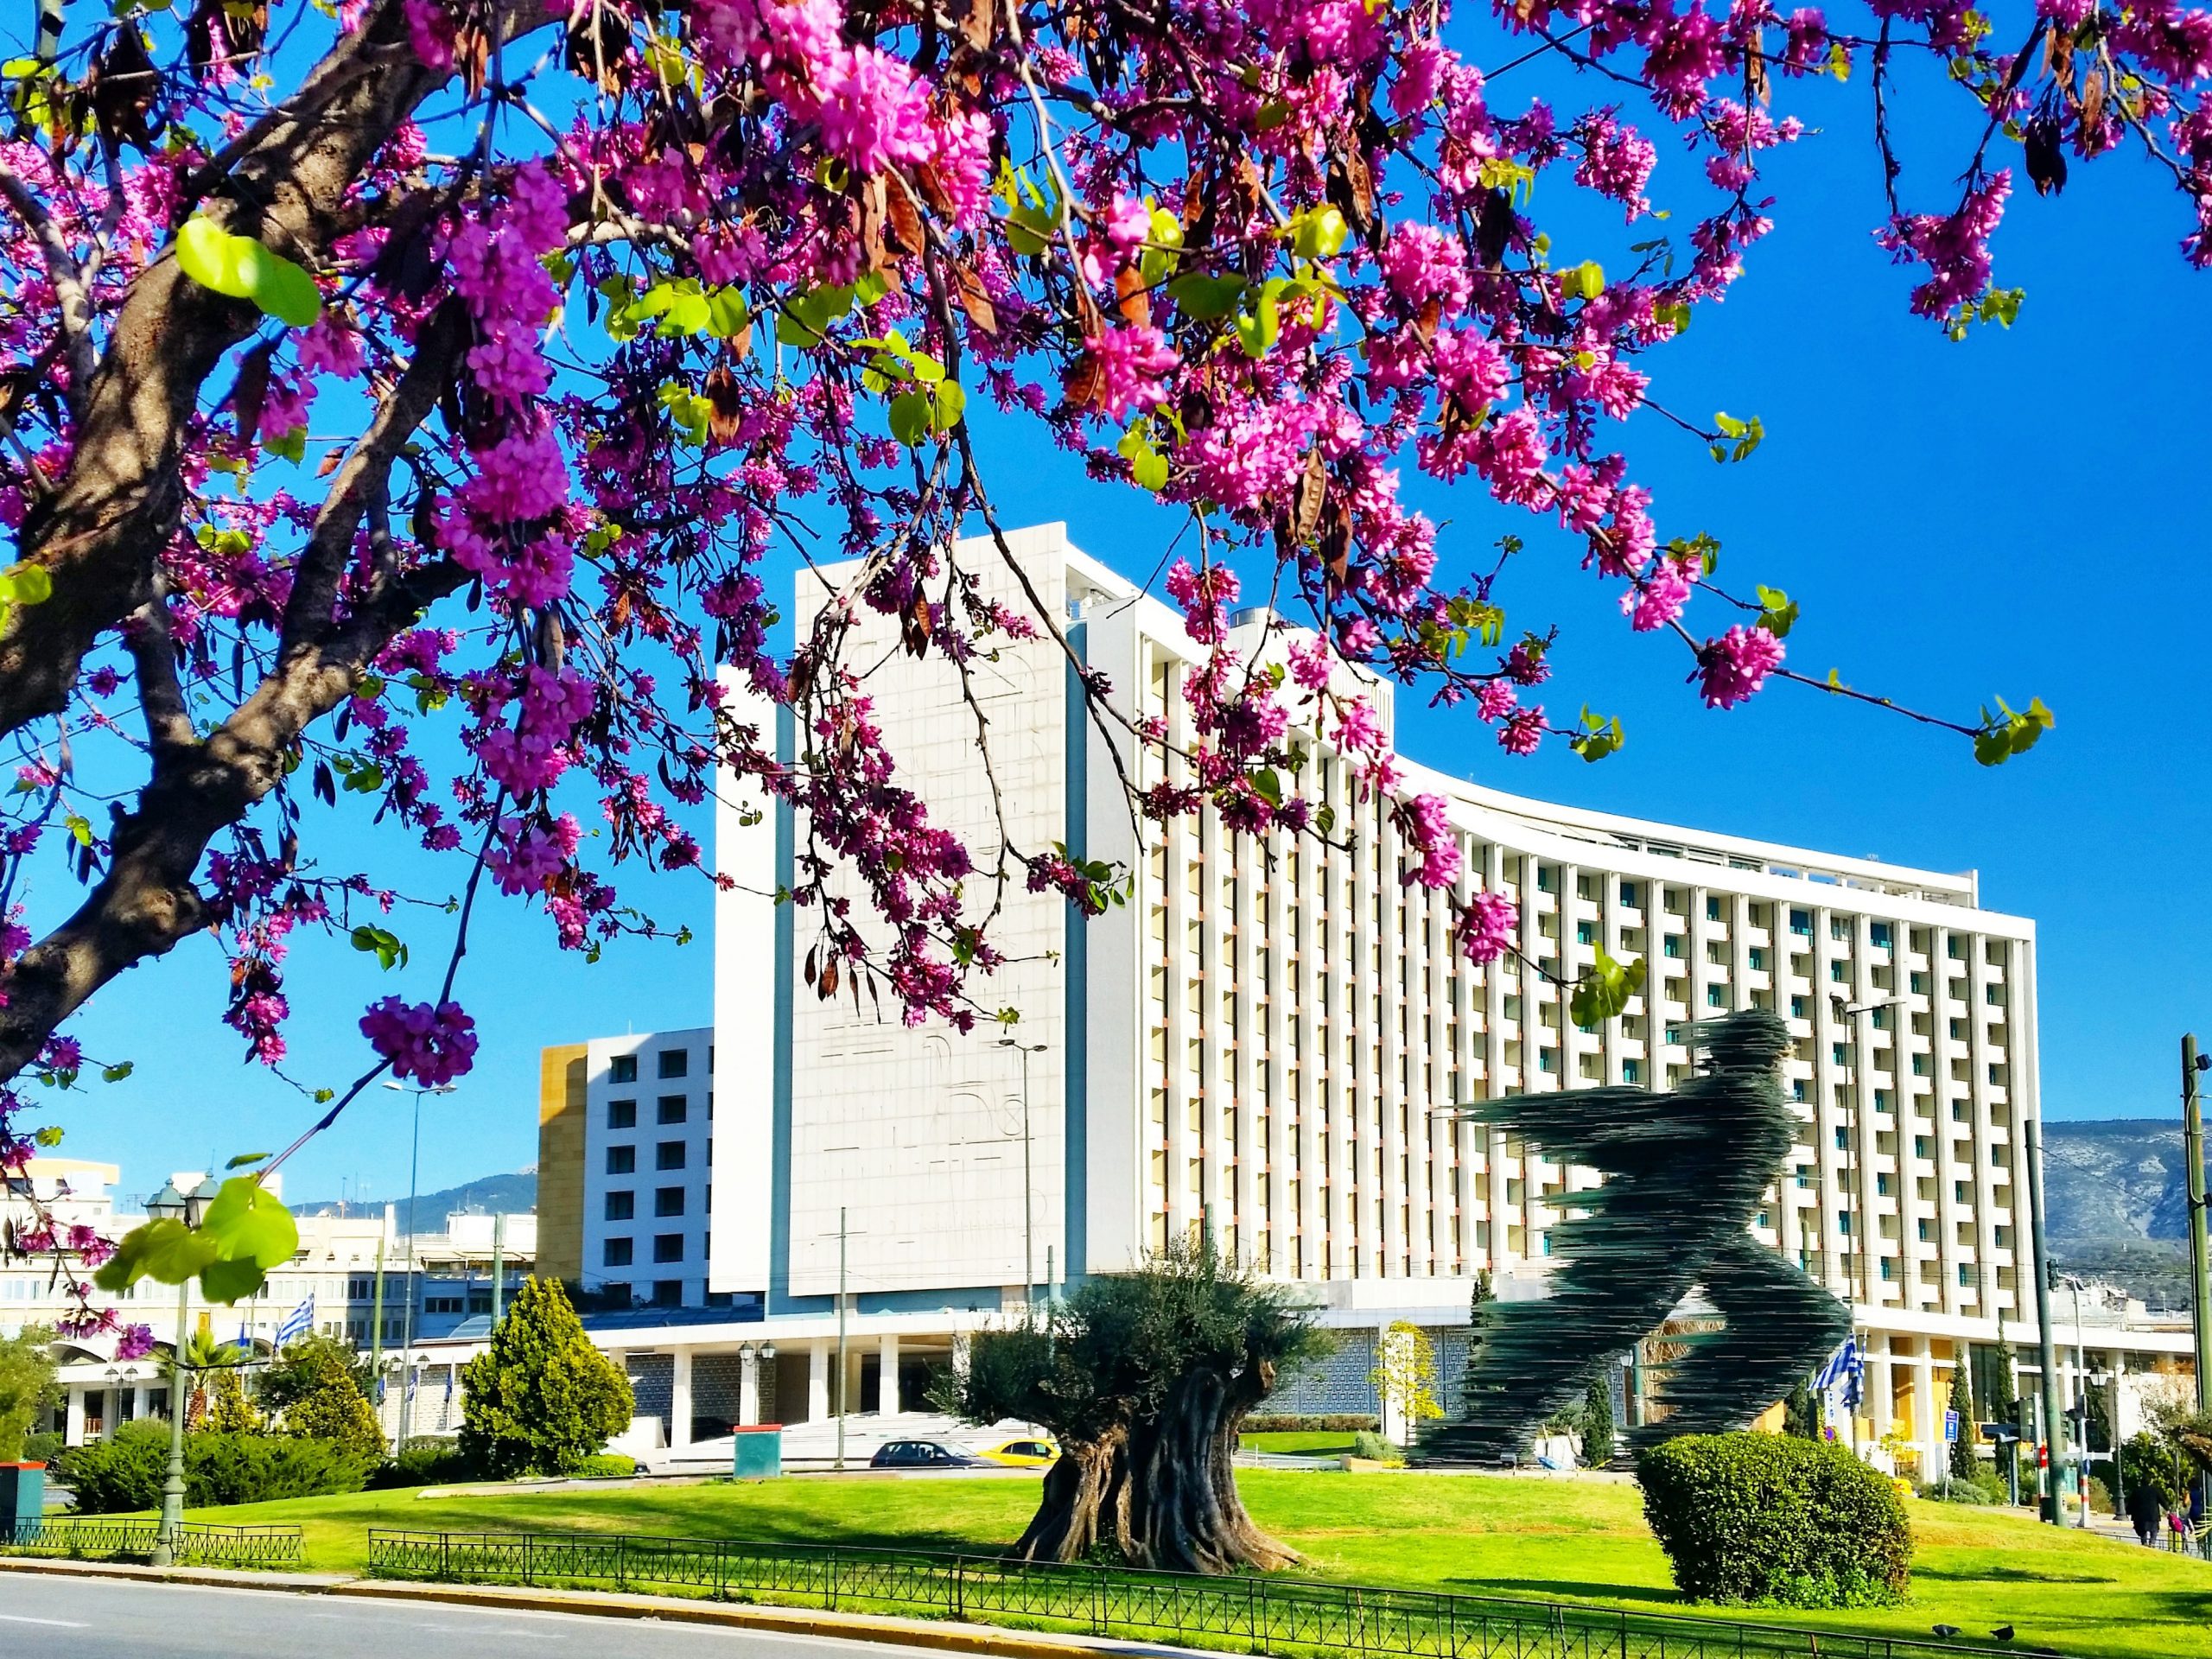 ΤΕΜΕΣ: Το λιφτινγκ στο Hilton, η ανάπτυξη στο Ελληνικό και η μεγάλη άφιξη στο Costa Navarino